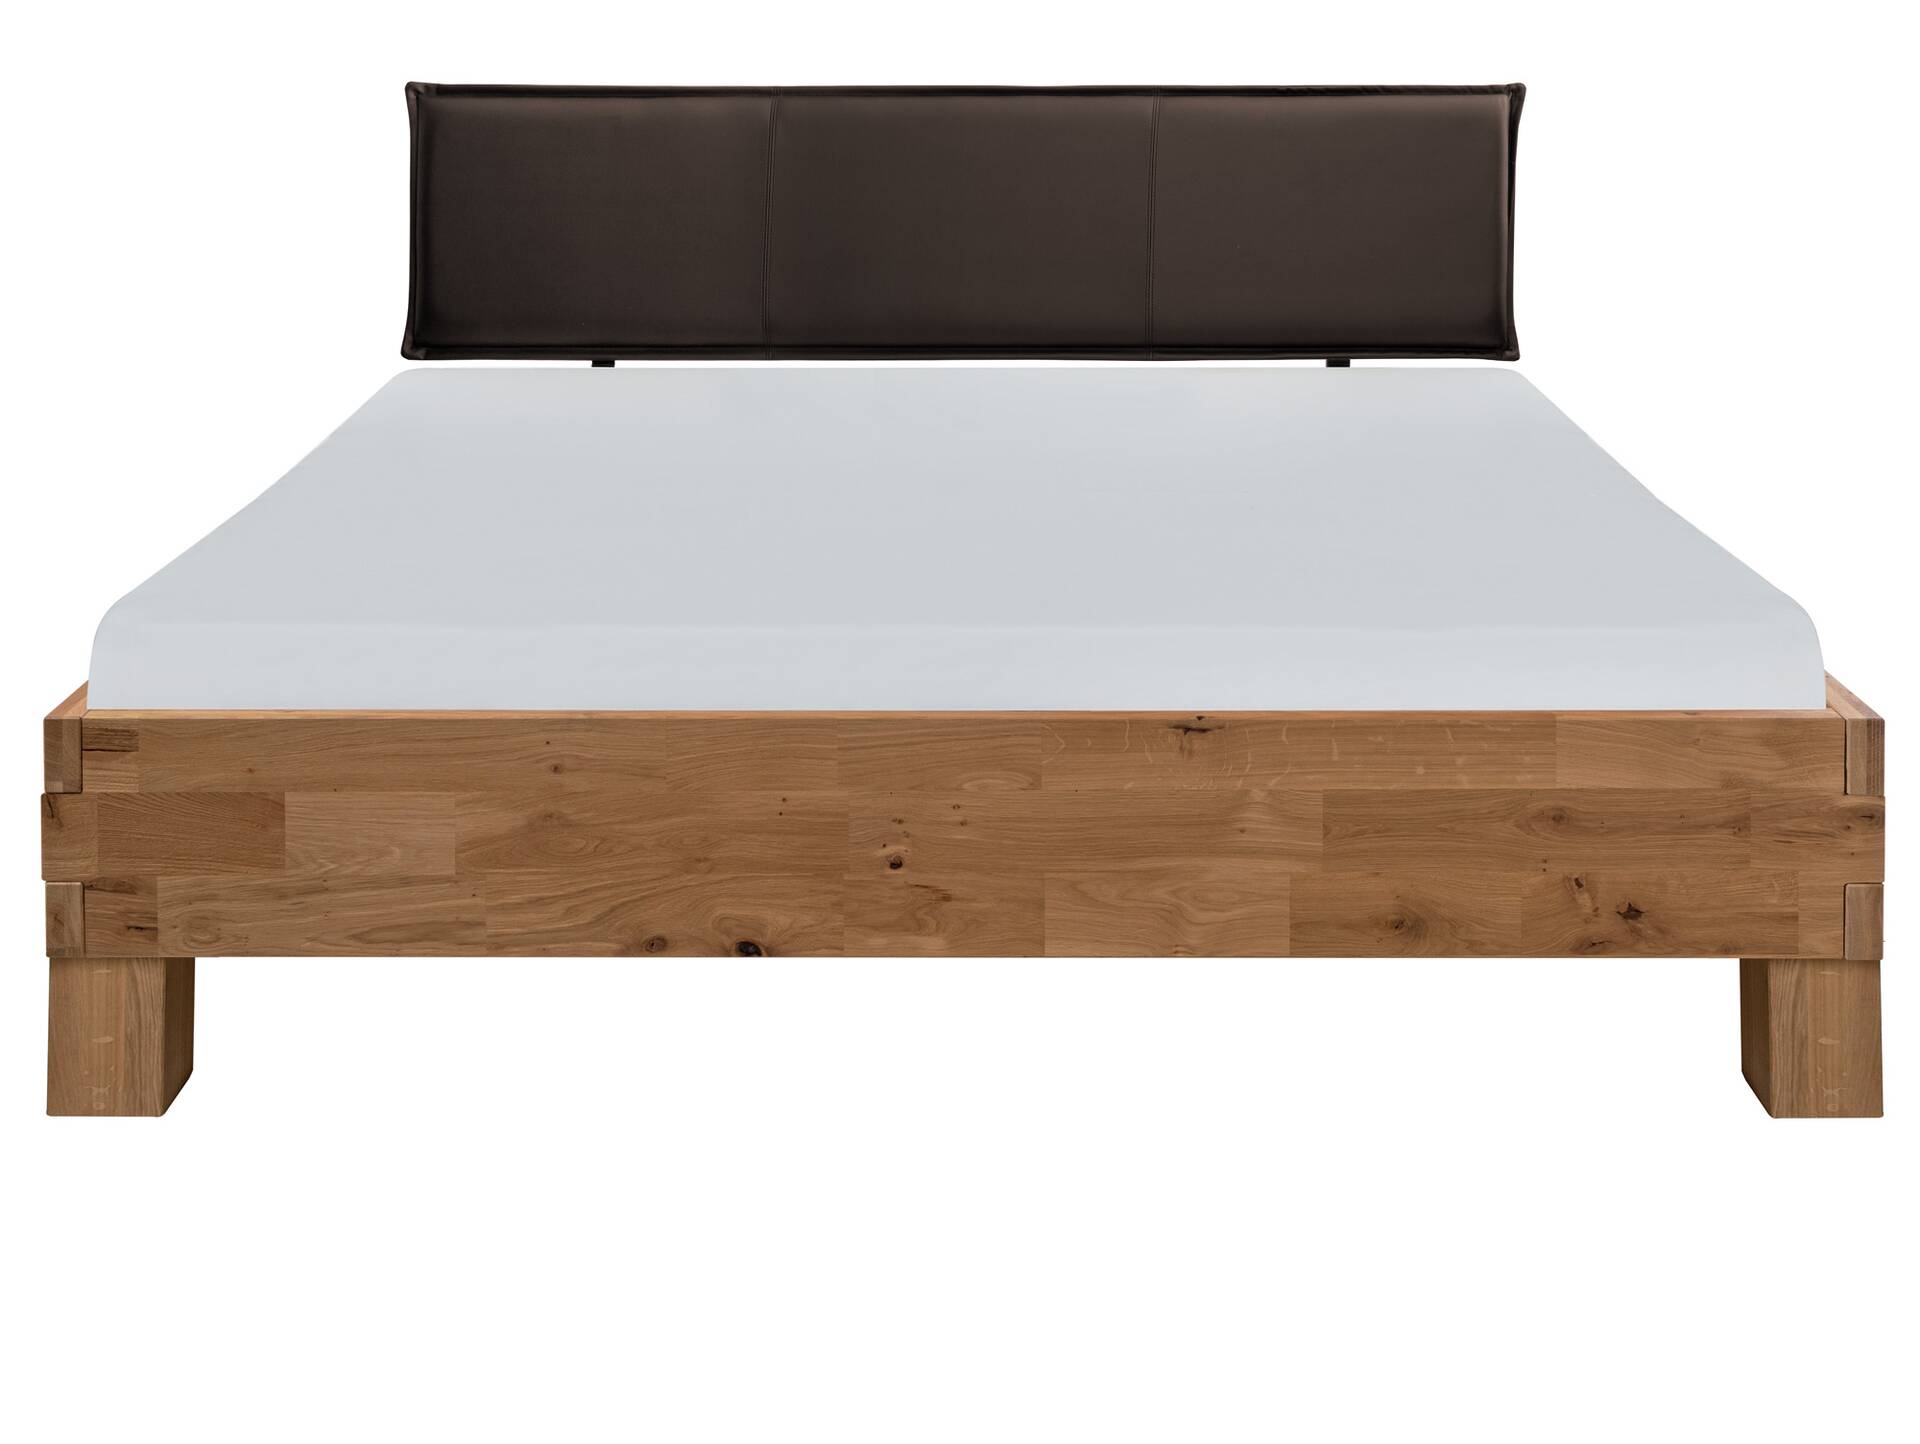 CORDINO 4-Fuß-Bett aus Eiche mit Polster-Kopfteil, Material Massivholz 200 x 220 cm | Eiche lackiert | Kunstleder Braun | gebürstet